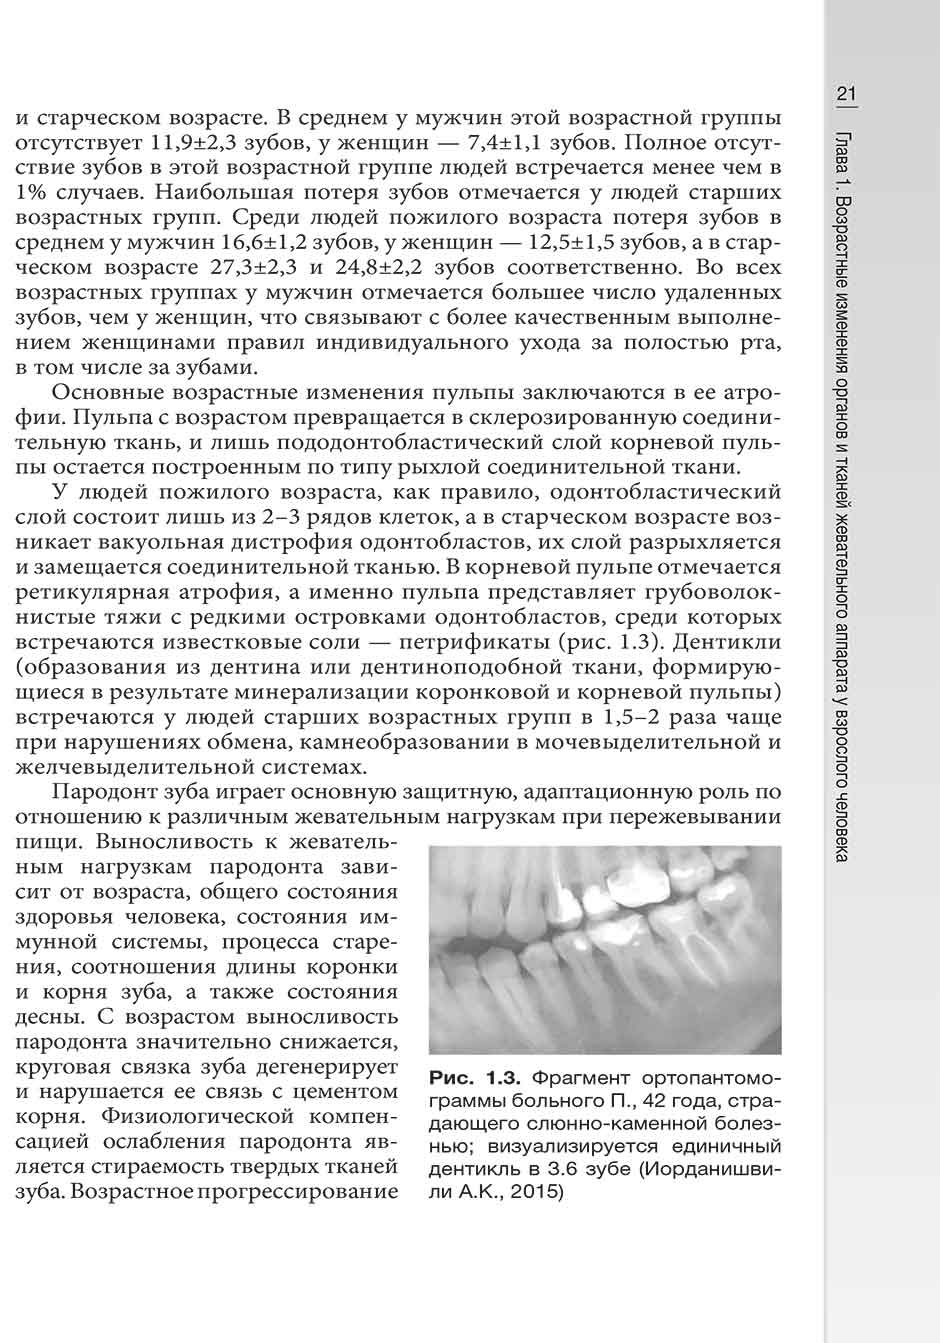 Рис. 1.3. Фрагмент ортопантомограммы больного П., 42 года, страдающего слюнно-каменной болезнью; визуализируется единичный